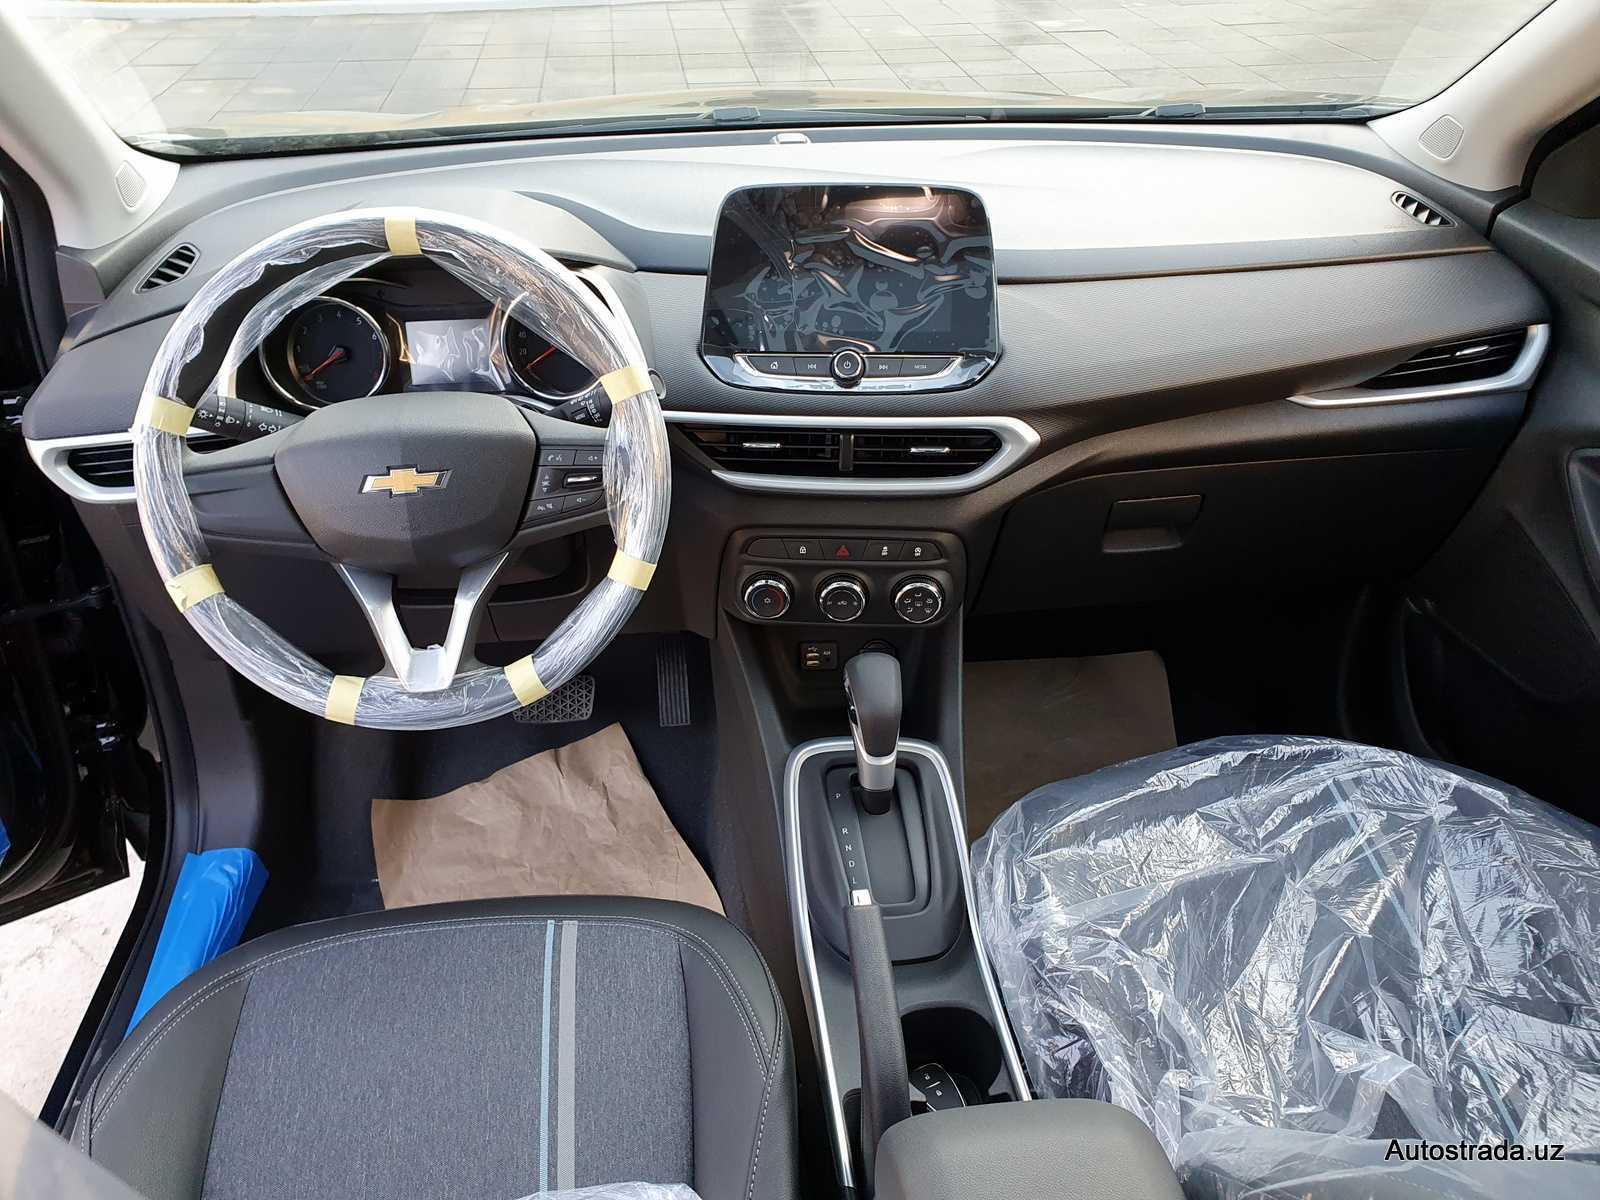 Комплектация автомобиля Chevrolet Tracker, технические характеристики, салон, багажник, двигатель, отзывы, цены